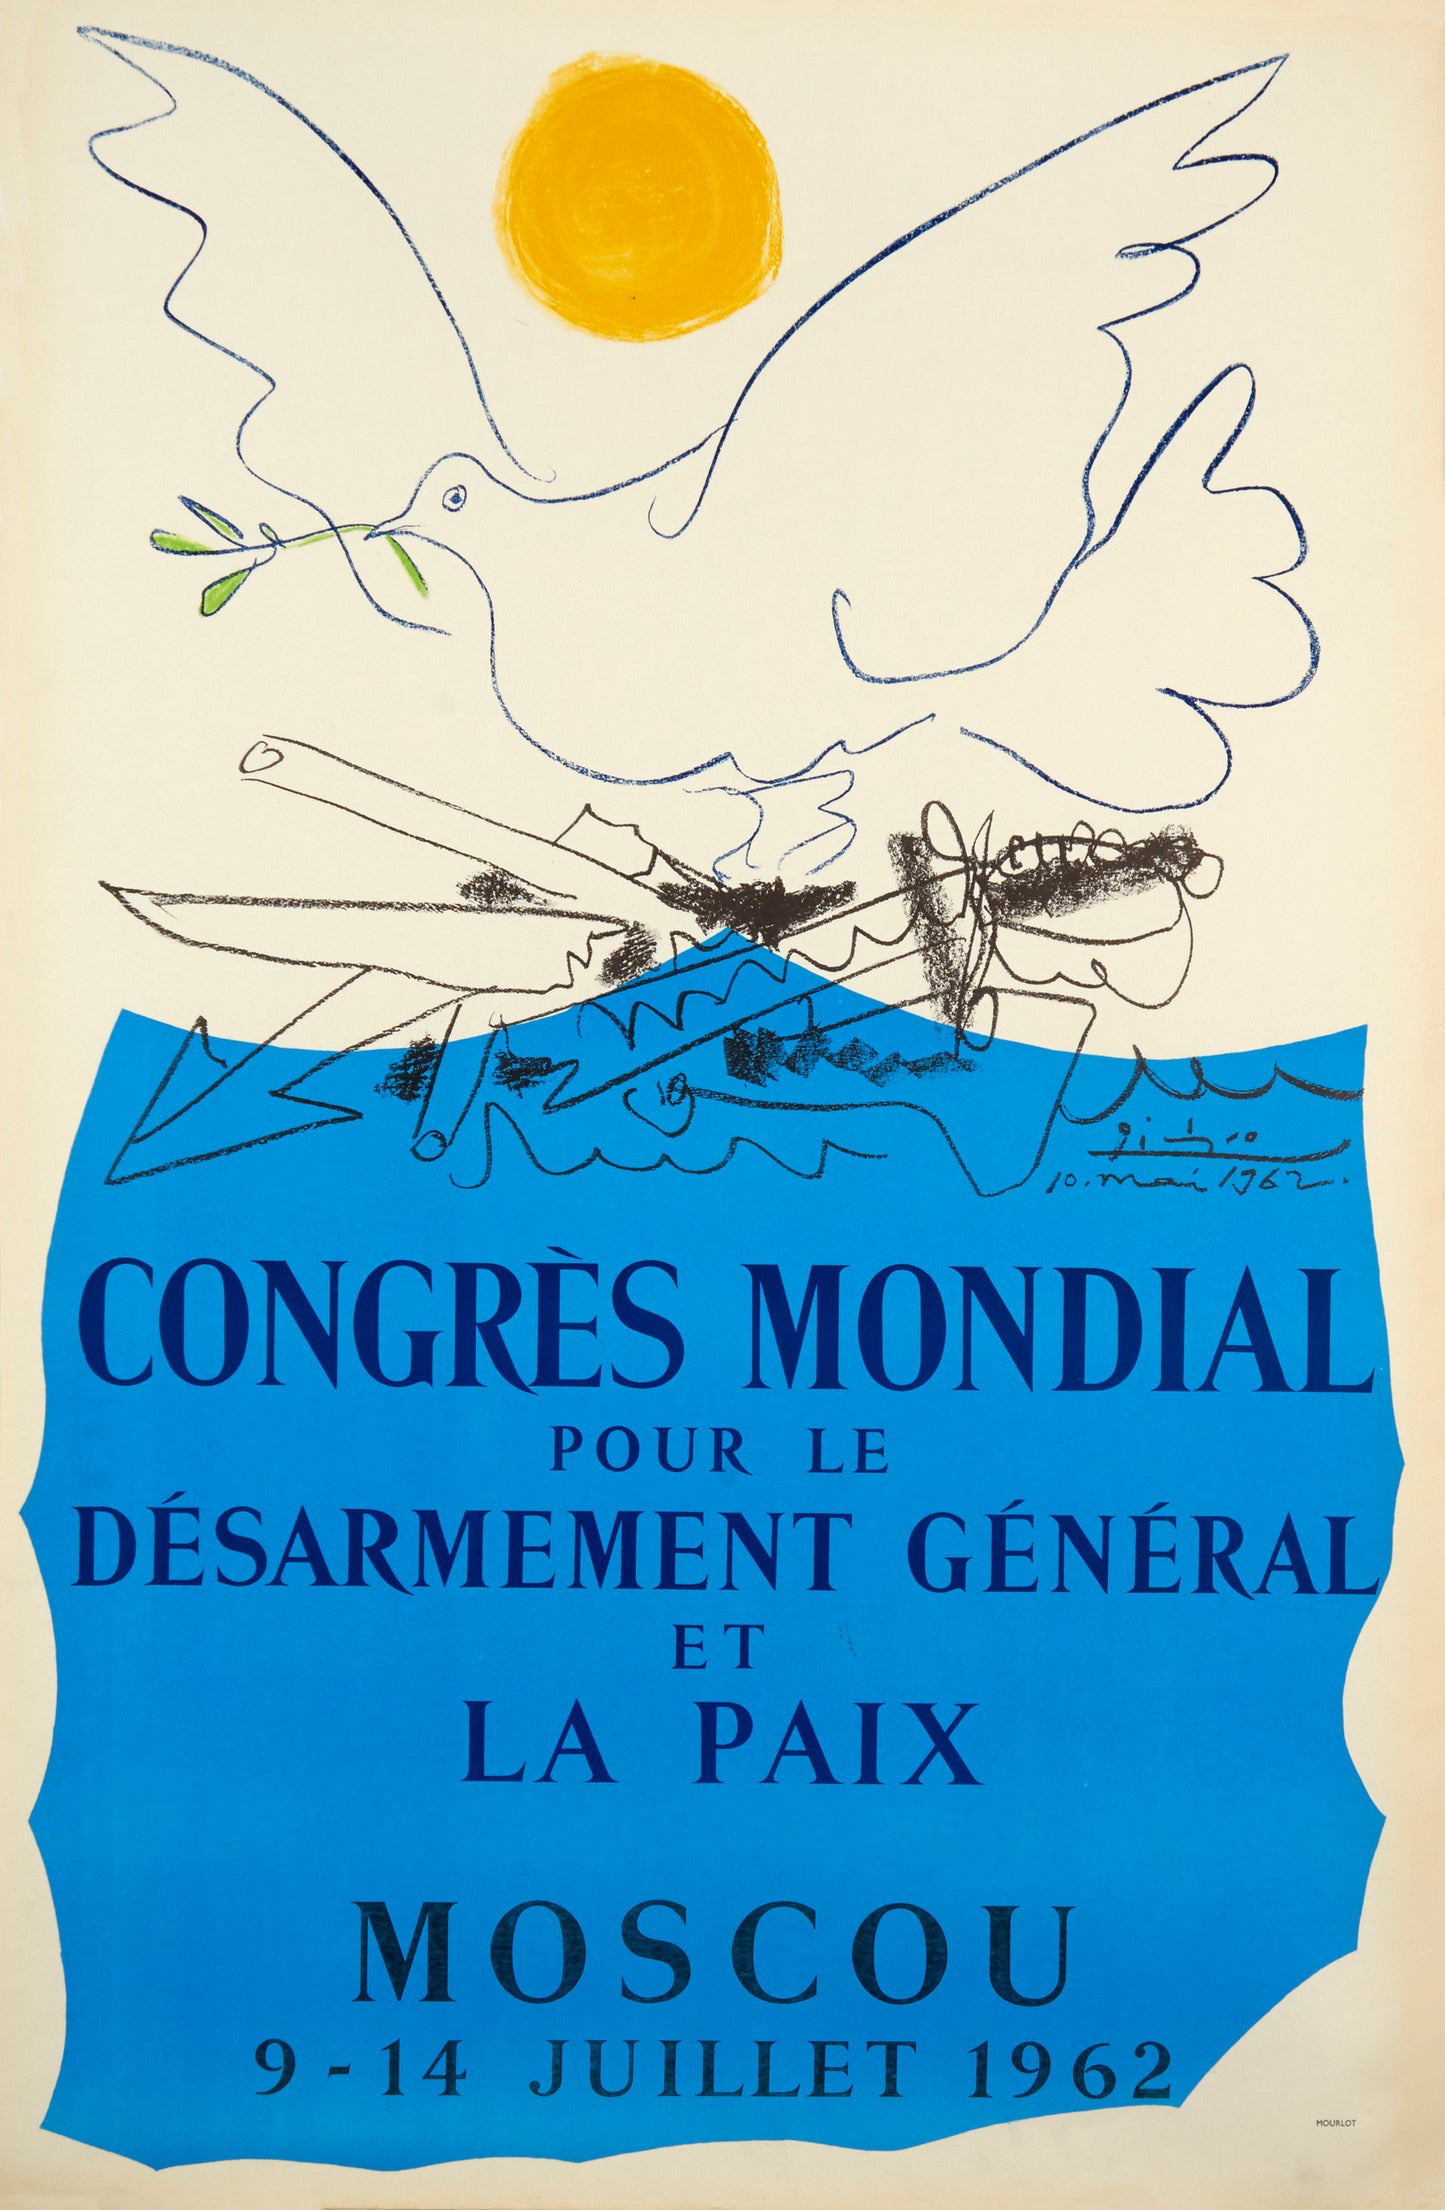 Congrès Mondial pour le Désarmement Général et la Paix by Pablo Picasso, 1962 - Mourlot Editions - Fine_Art - Poster - Lithograph - Wall Art - Vintage - Prints - Original